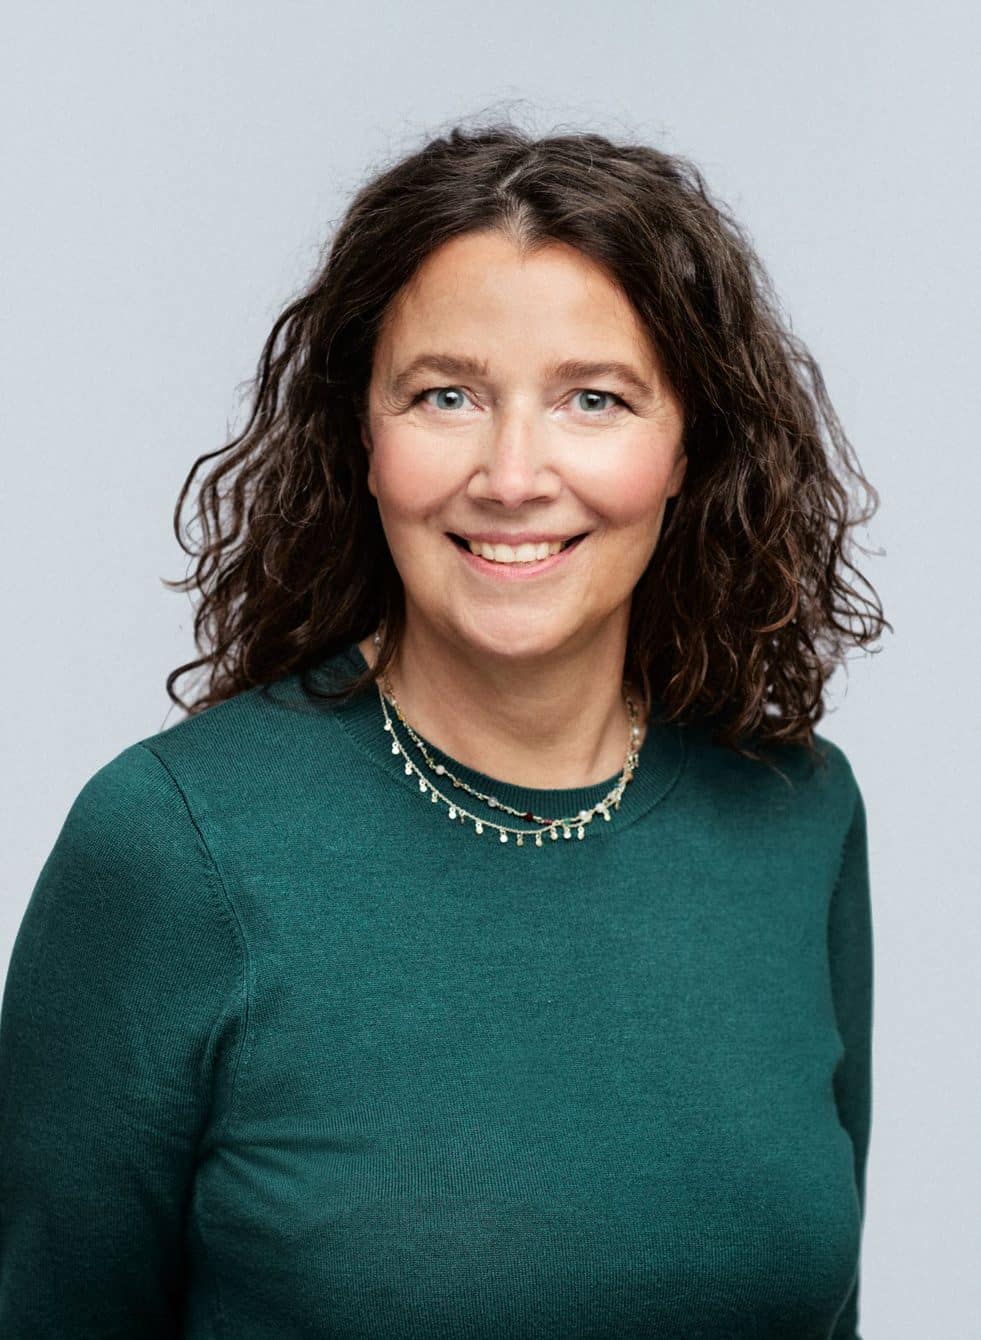 Mette Annelie Rasmussen